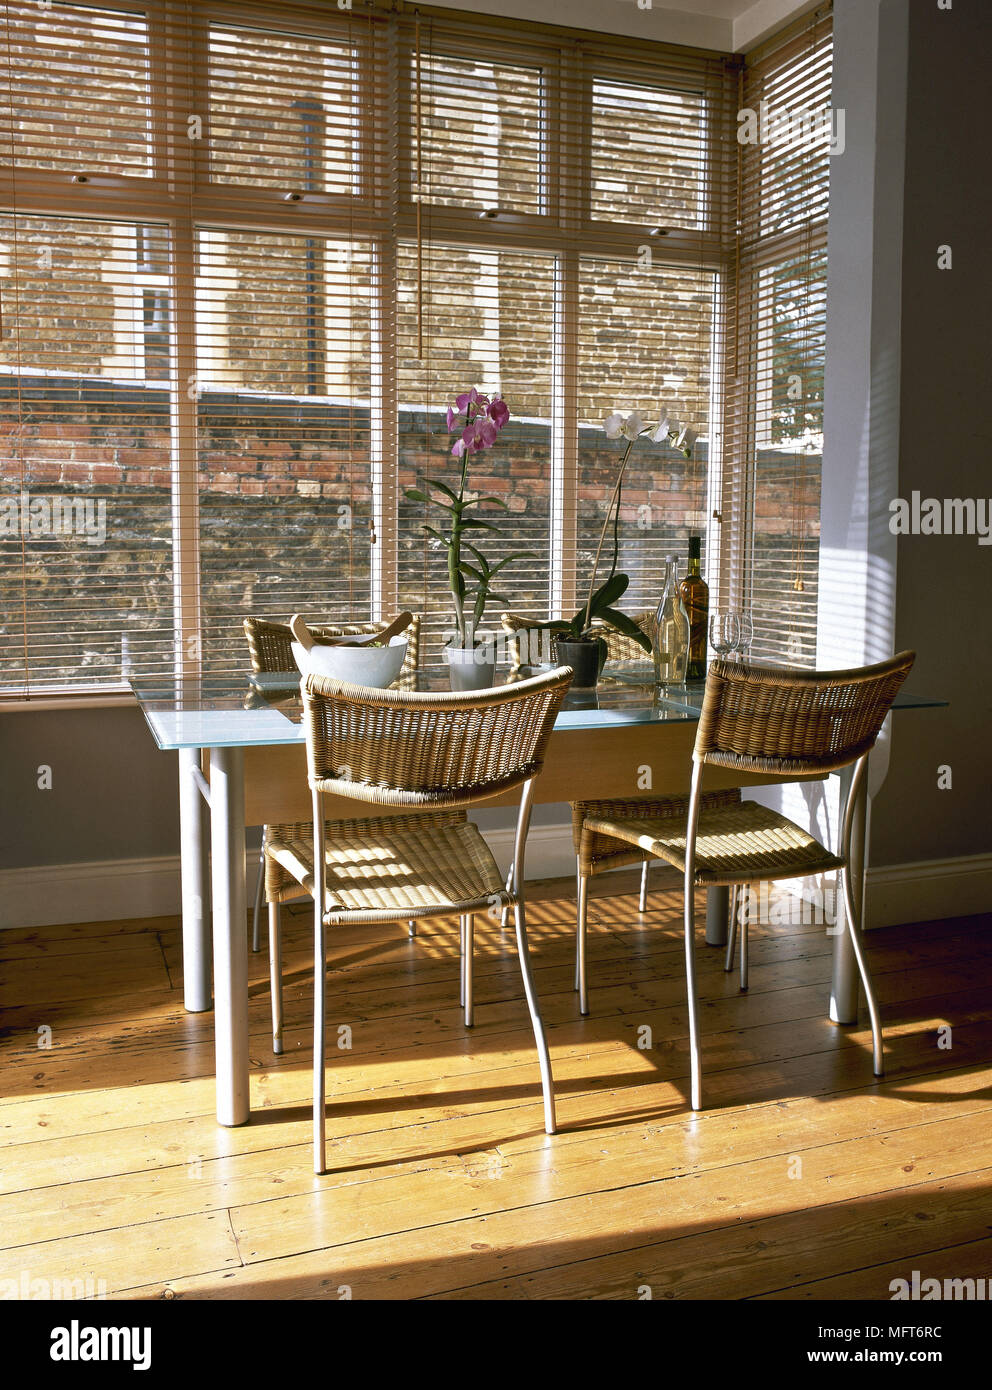 Moderna cucina sala da pranzo pavimento in legno tavolo in metallo tessuto sedie di vimini veneziane interni camere square finestre a baia naturale di folle compagno di colori Foto Stock